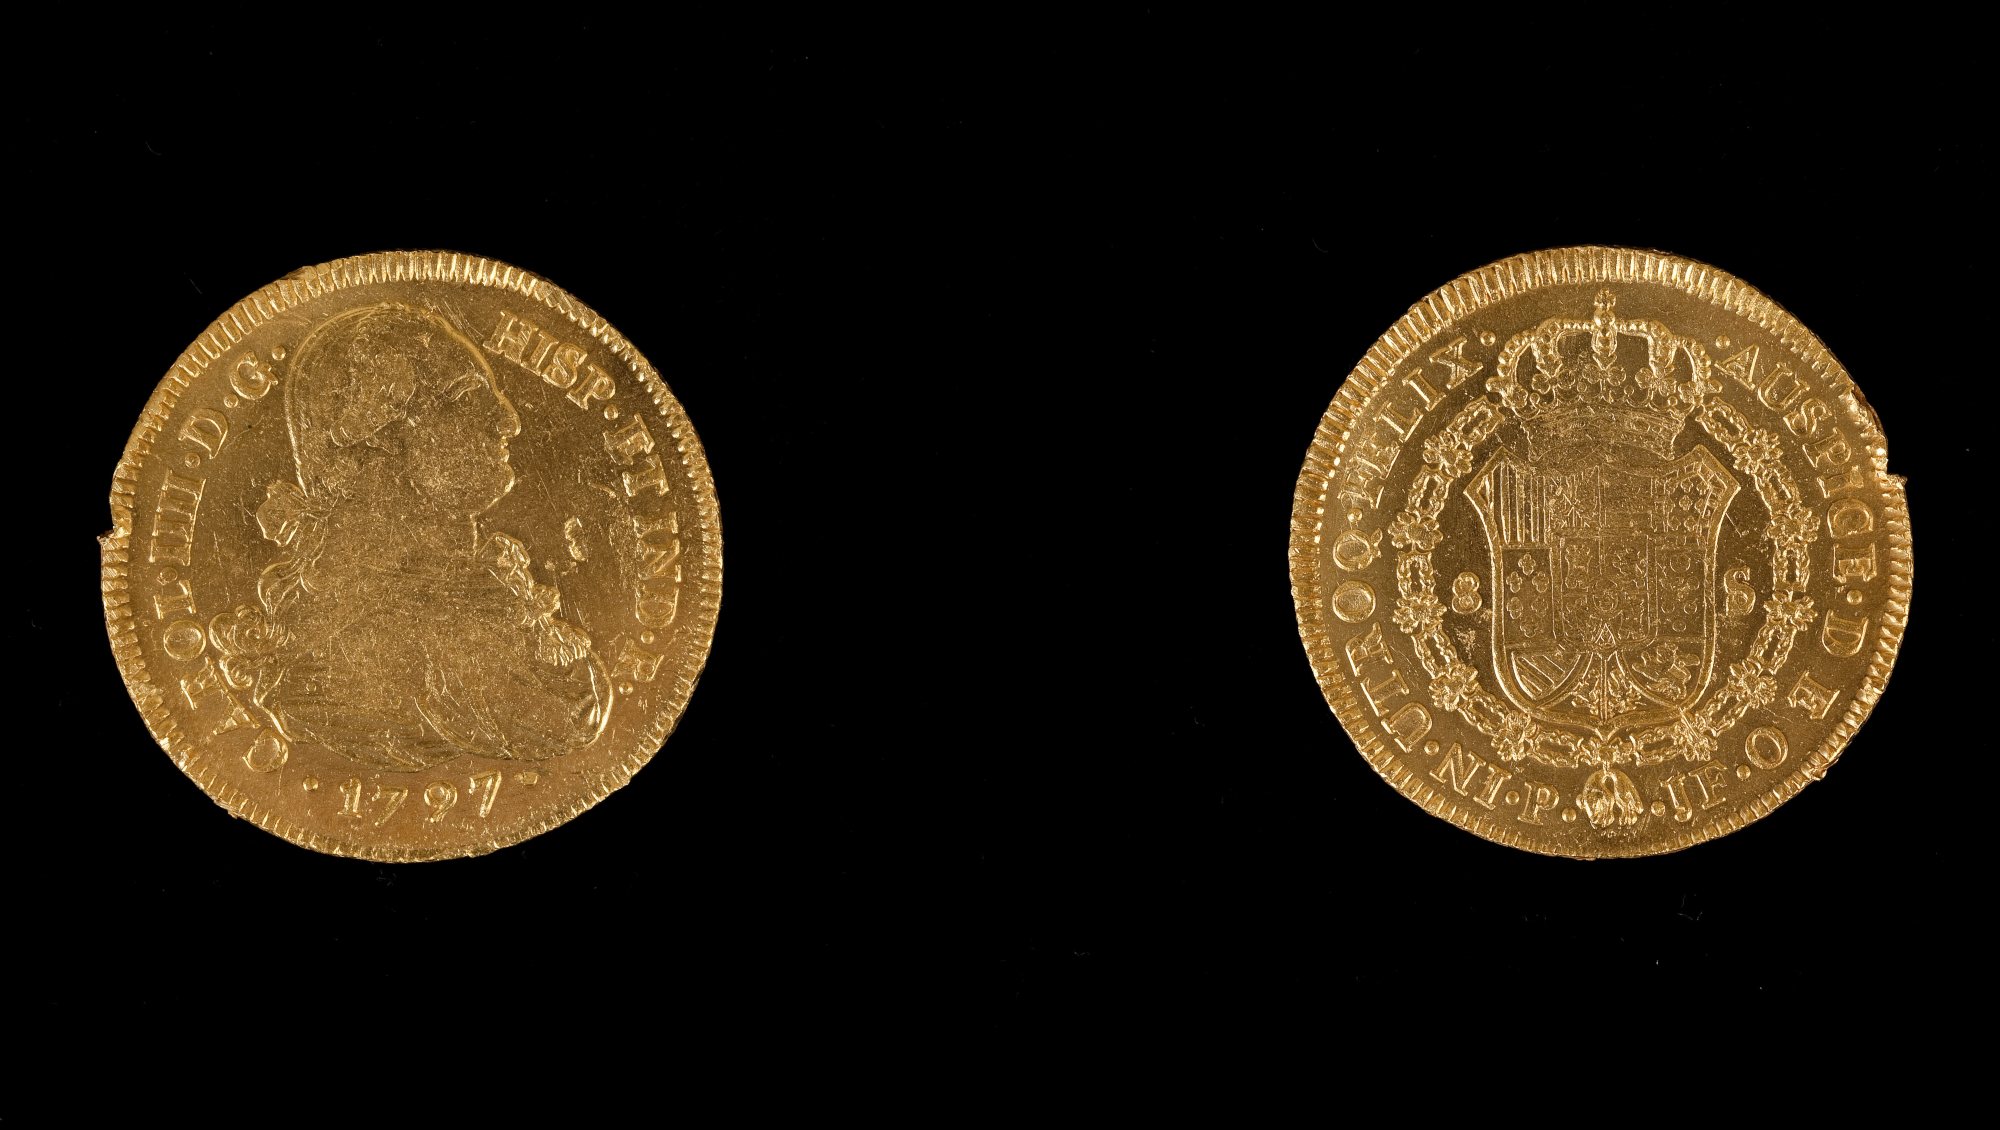 Moneda de ocho escudos de Carlos IV / Tesoro de Ntra Sra de las Mercedes / Año 1797